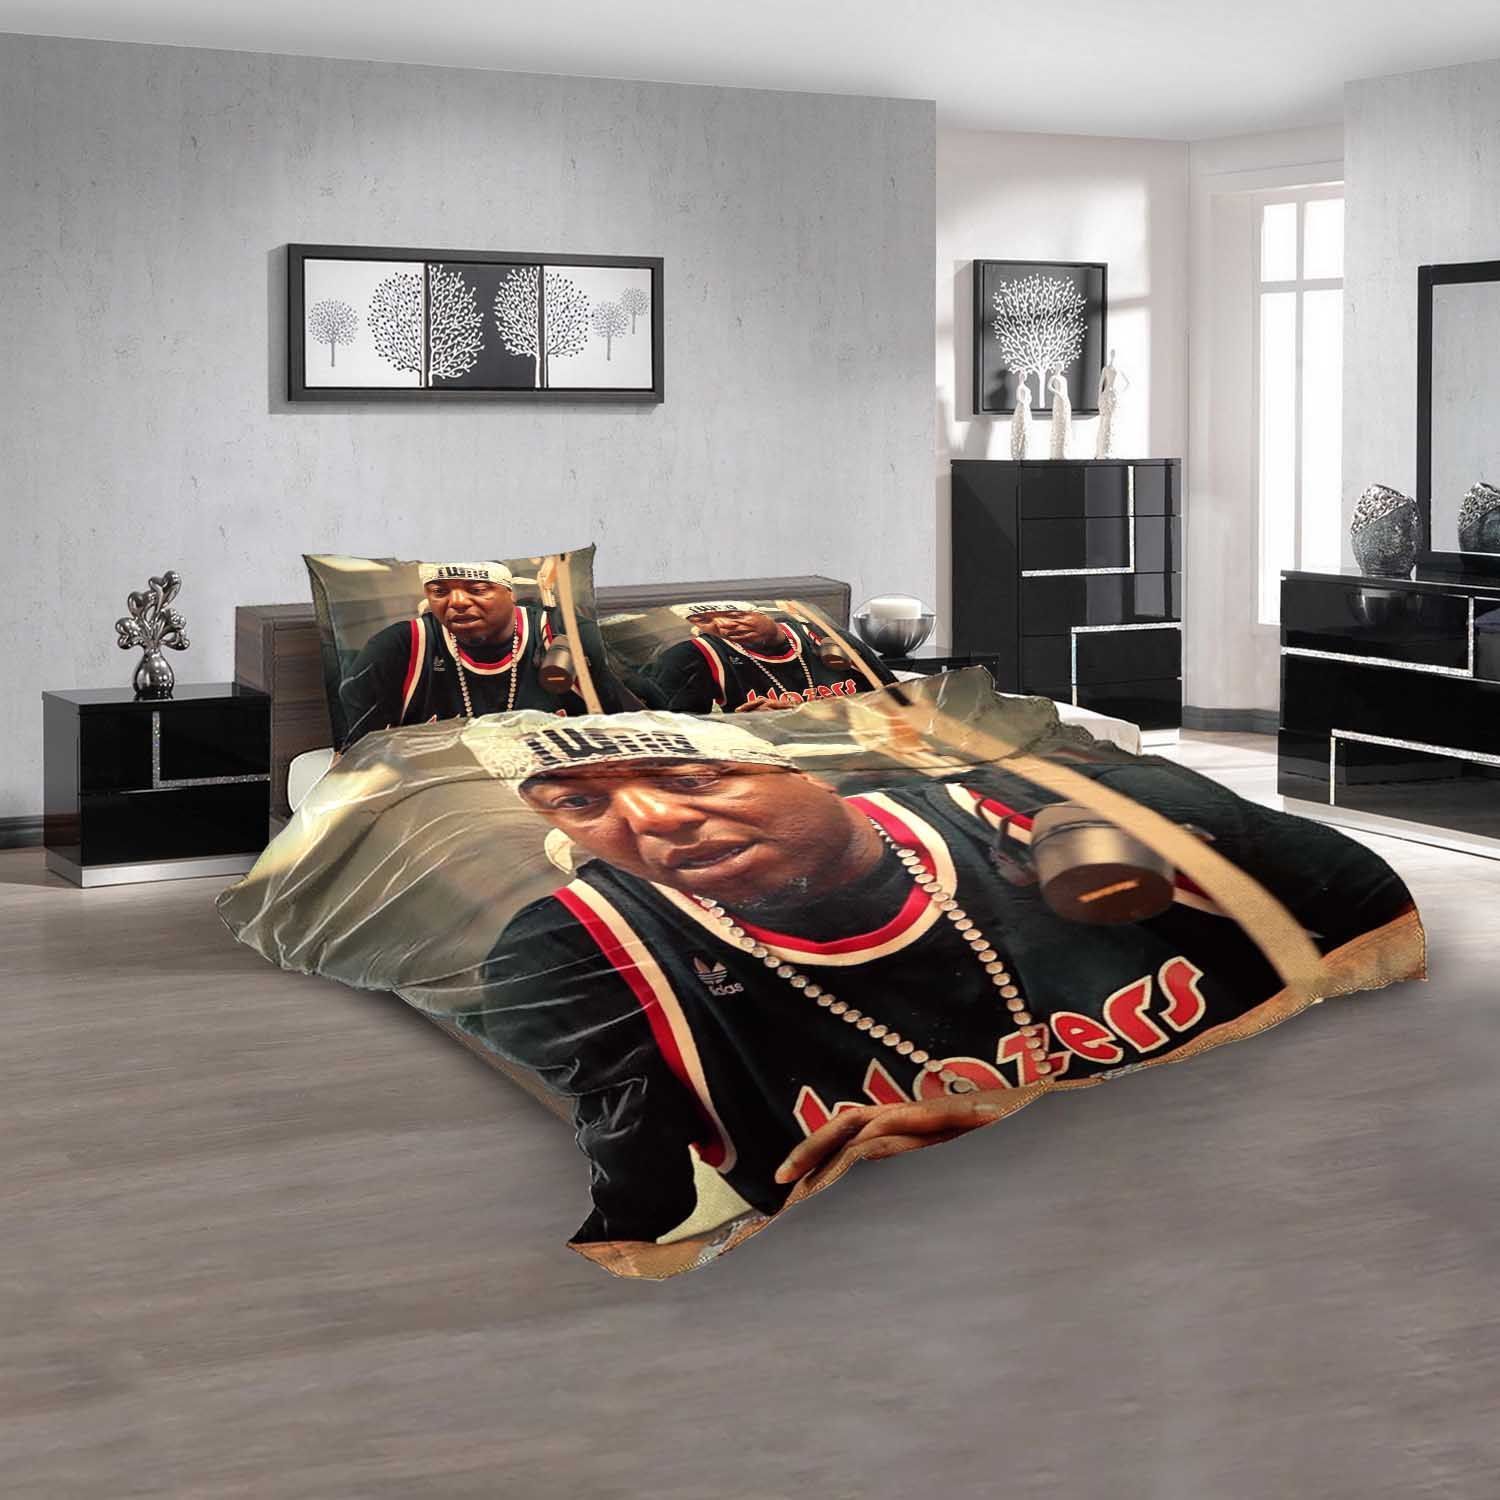 Famous Rapper Spice 1 V Bedding Sets